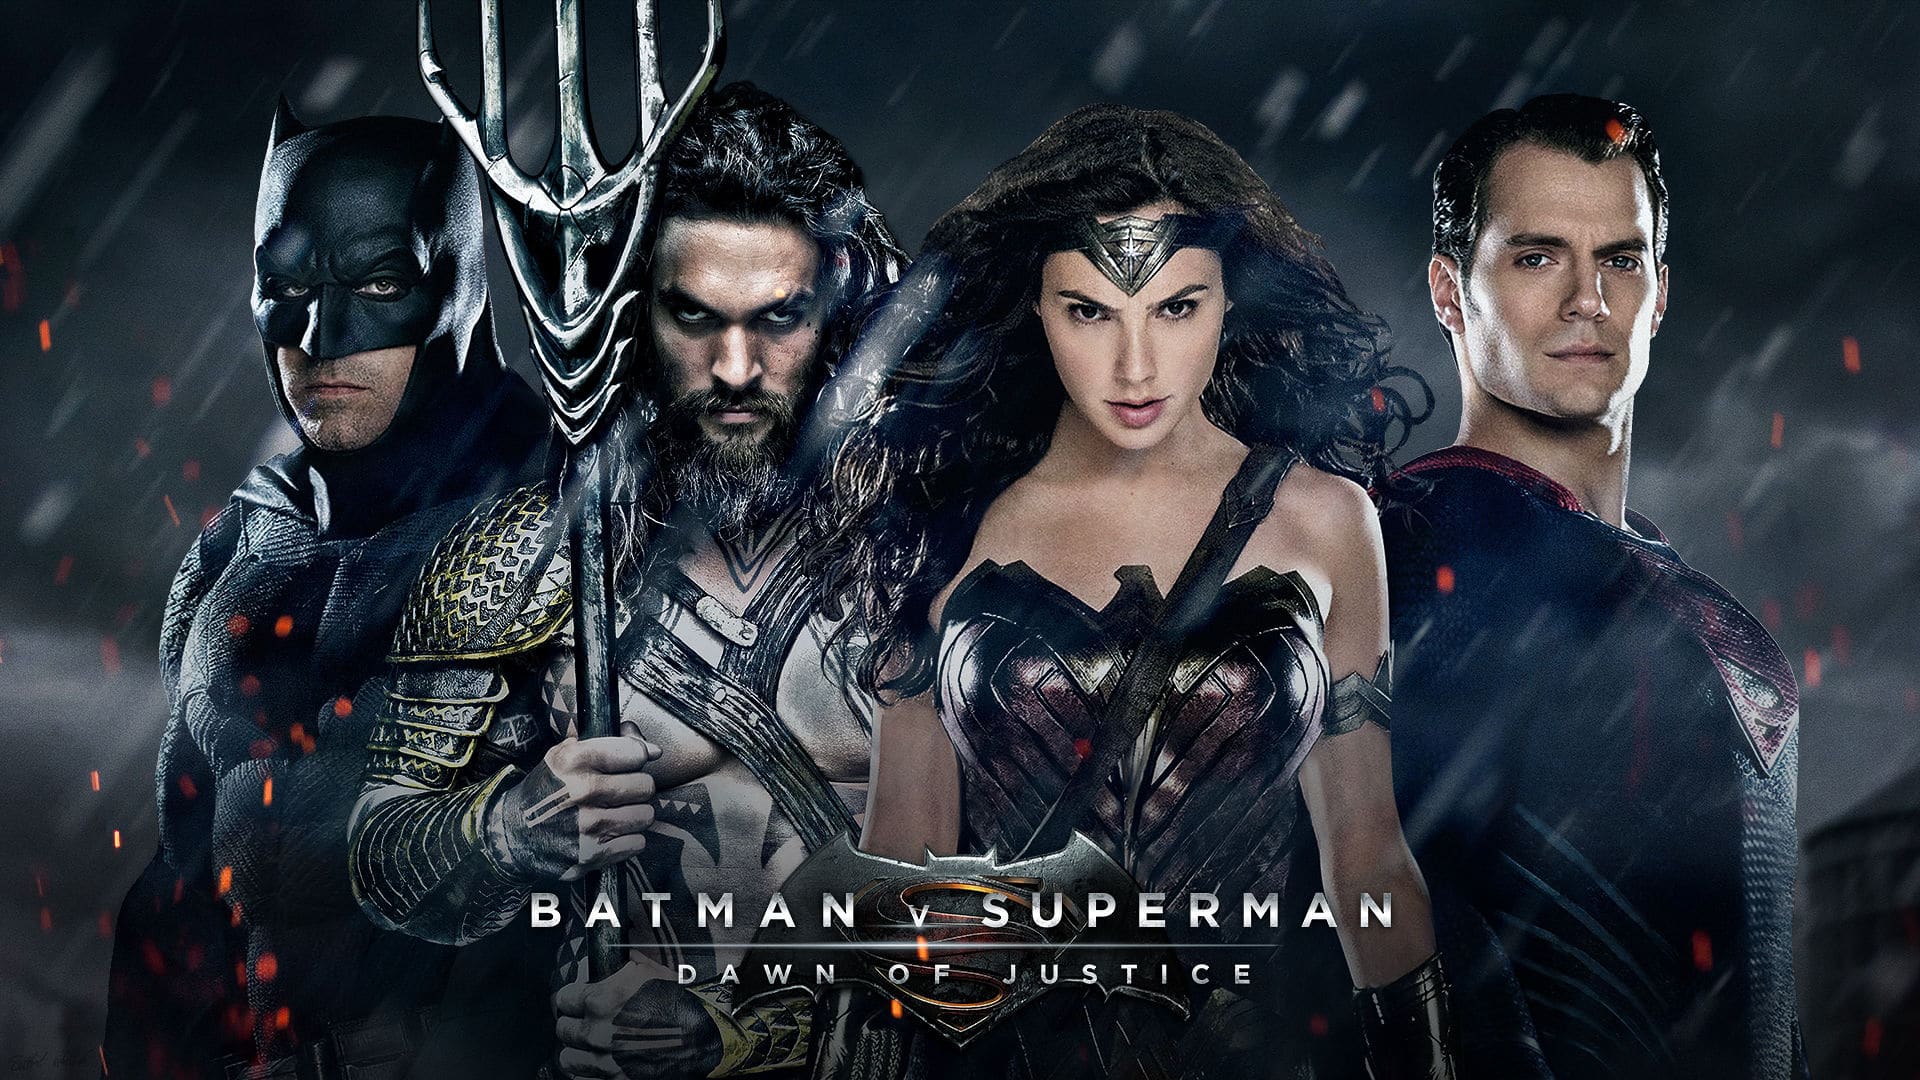 Zack Snyder discloses Original Plans for Aquaman post Batman v Superman Debut